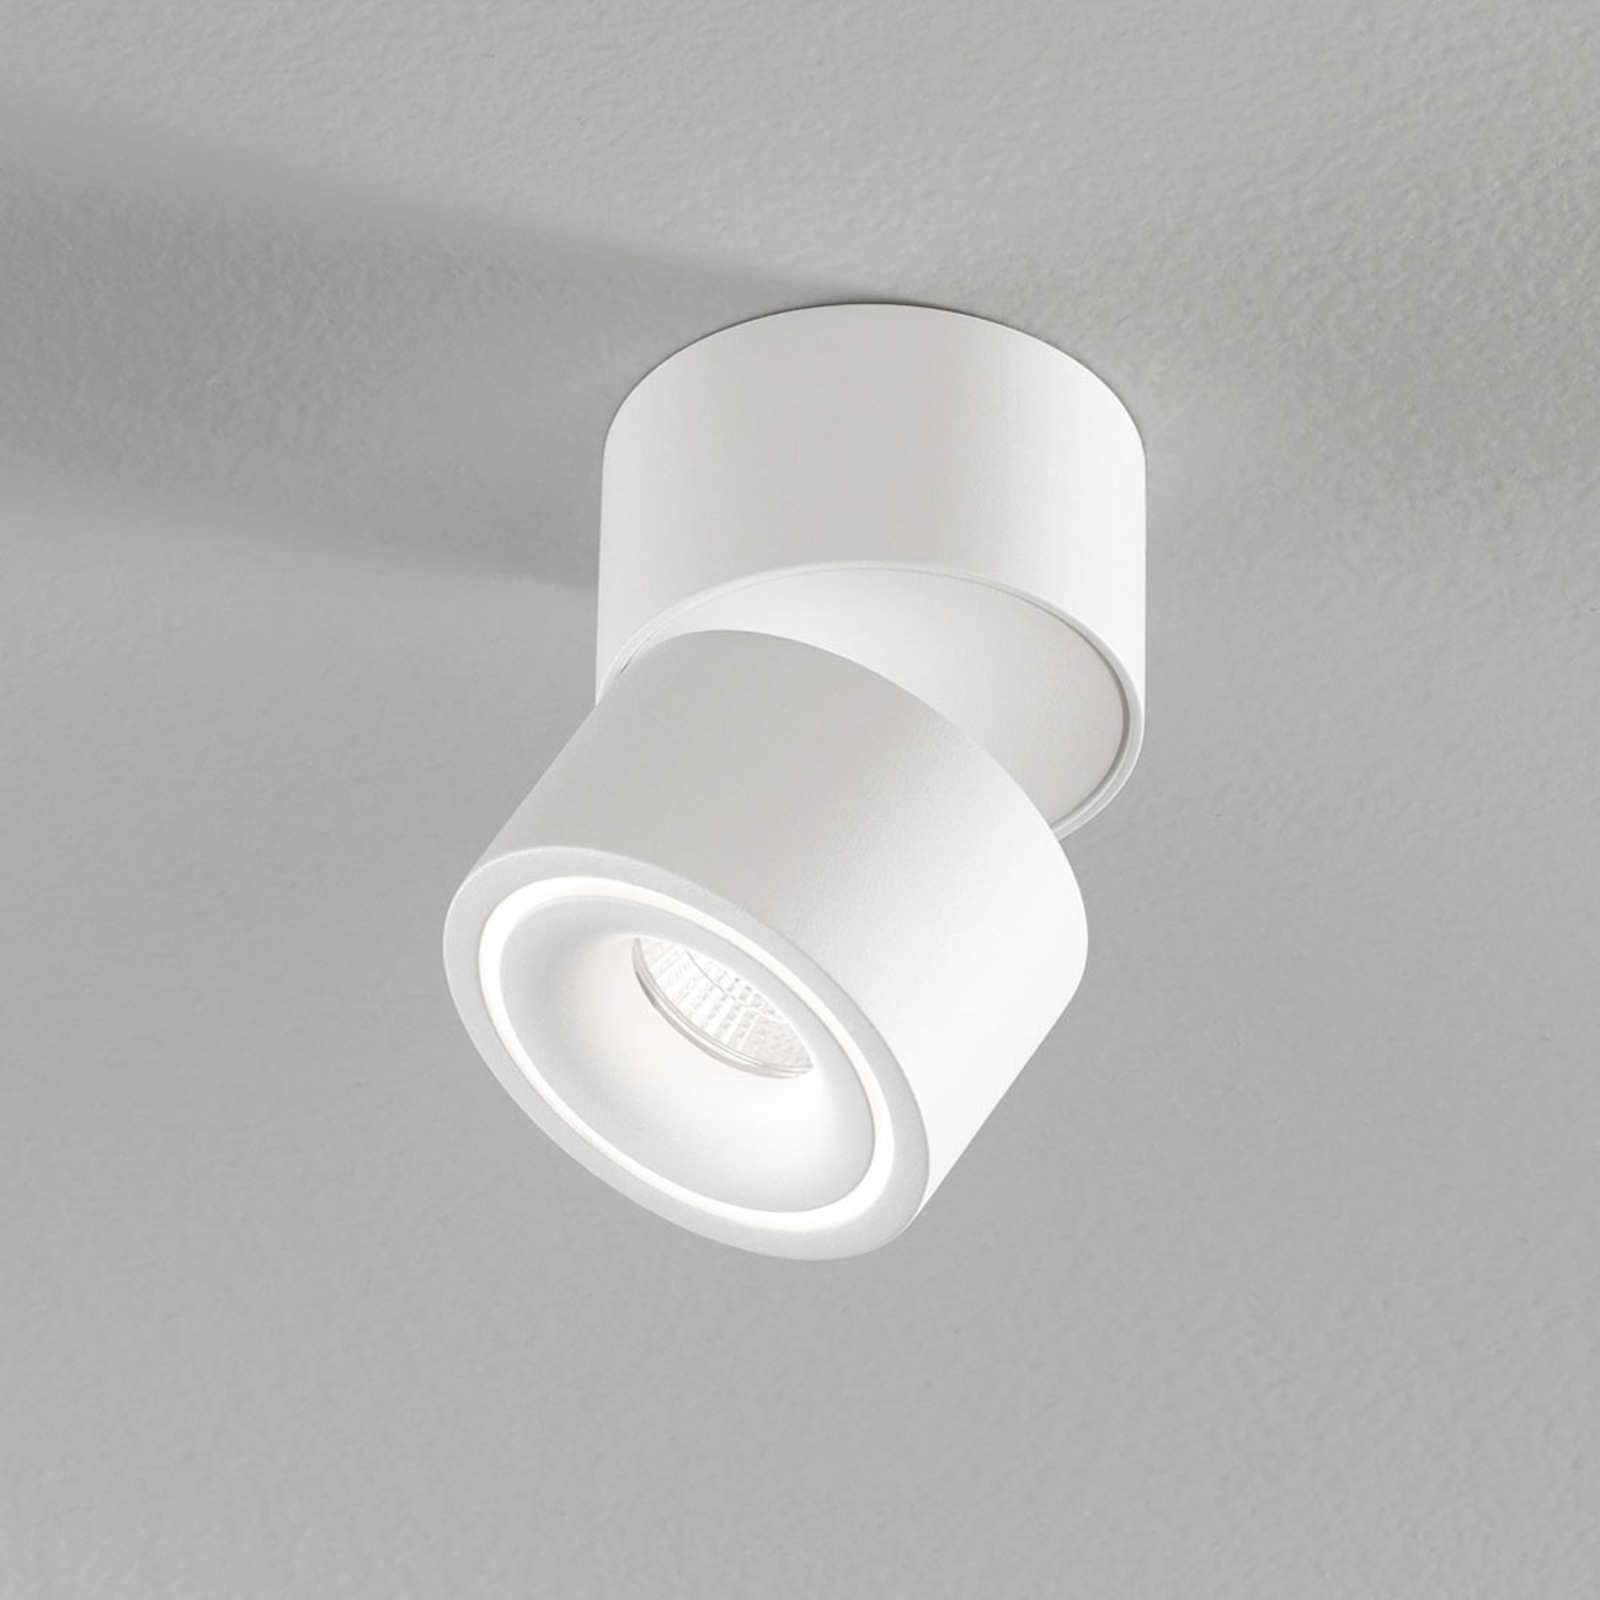 Egger Clippo S LED downlight, white